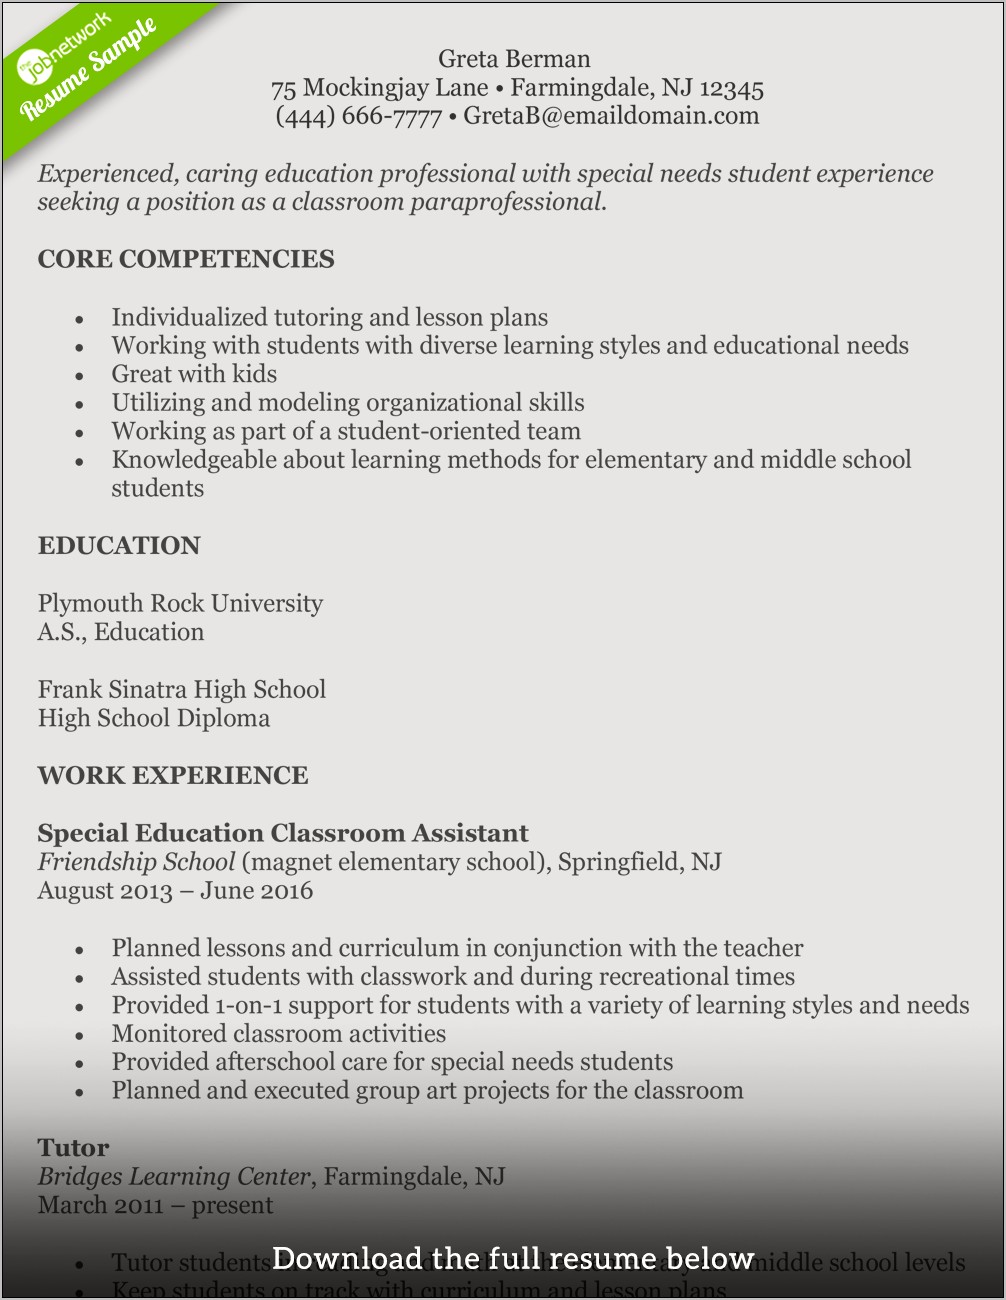 Resume Objective For Student Teacher